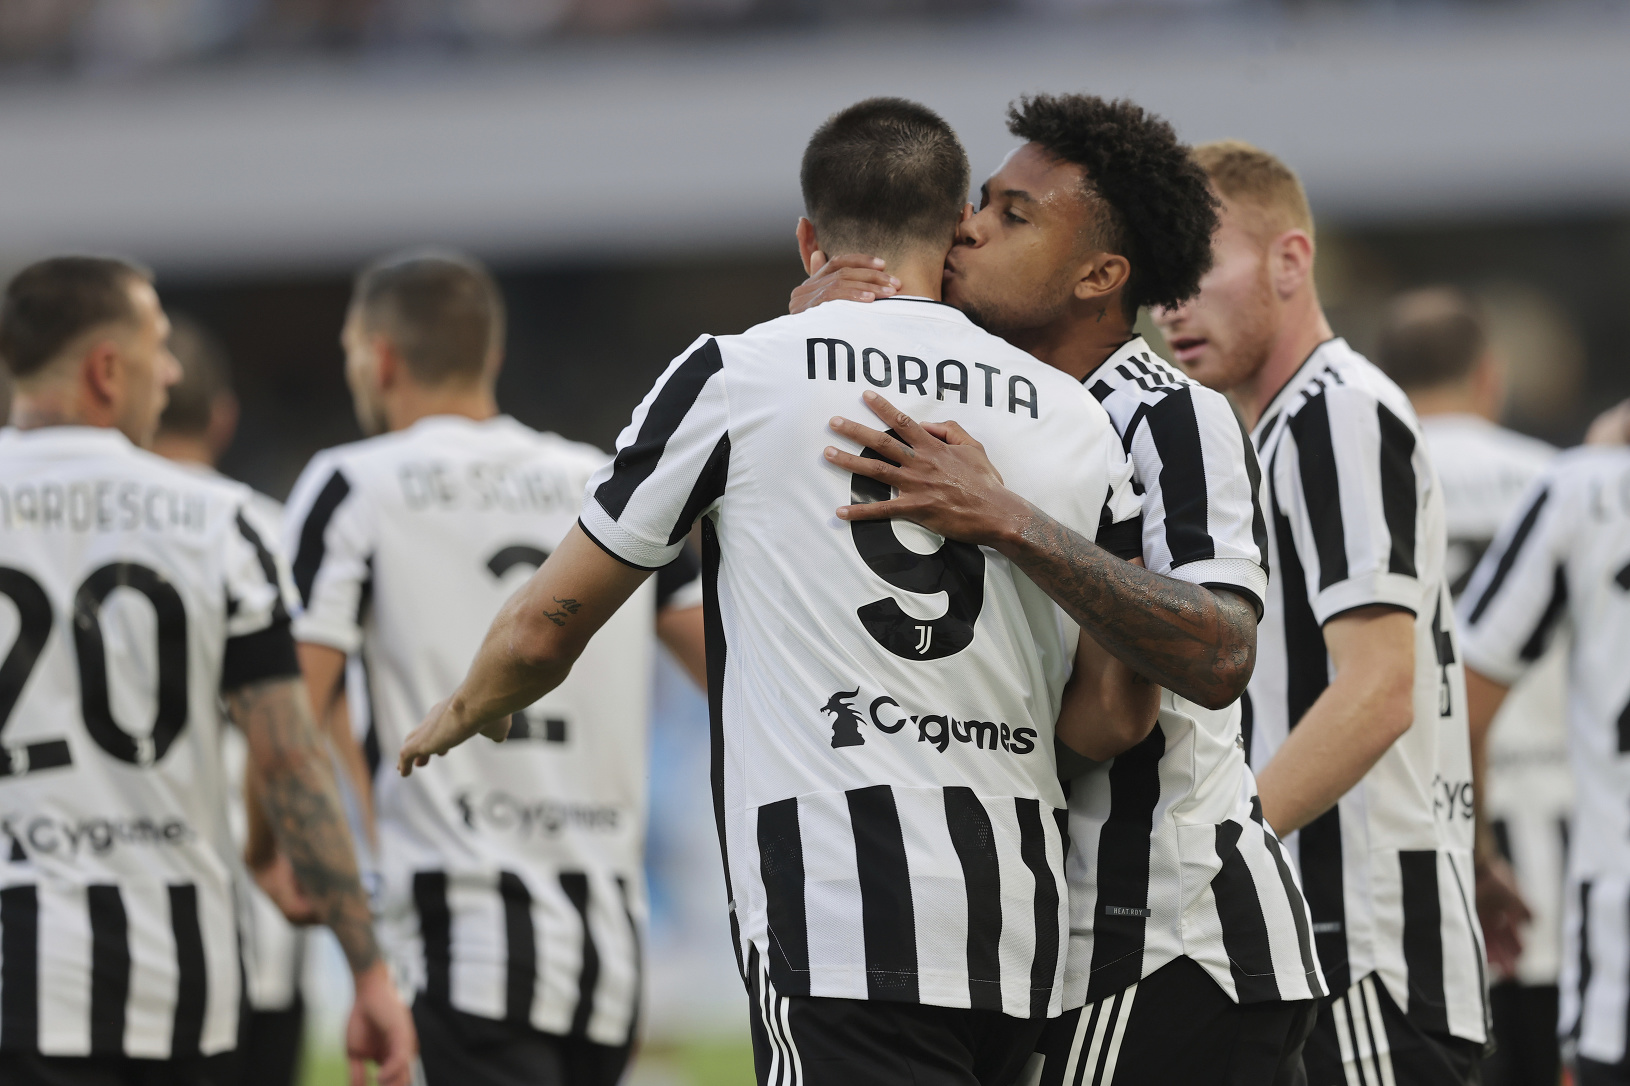 Neapol doma zdolal Juventus